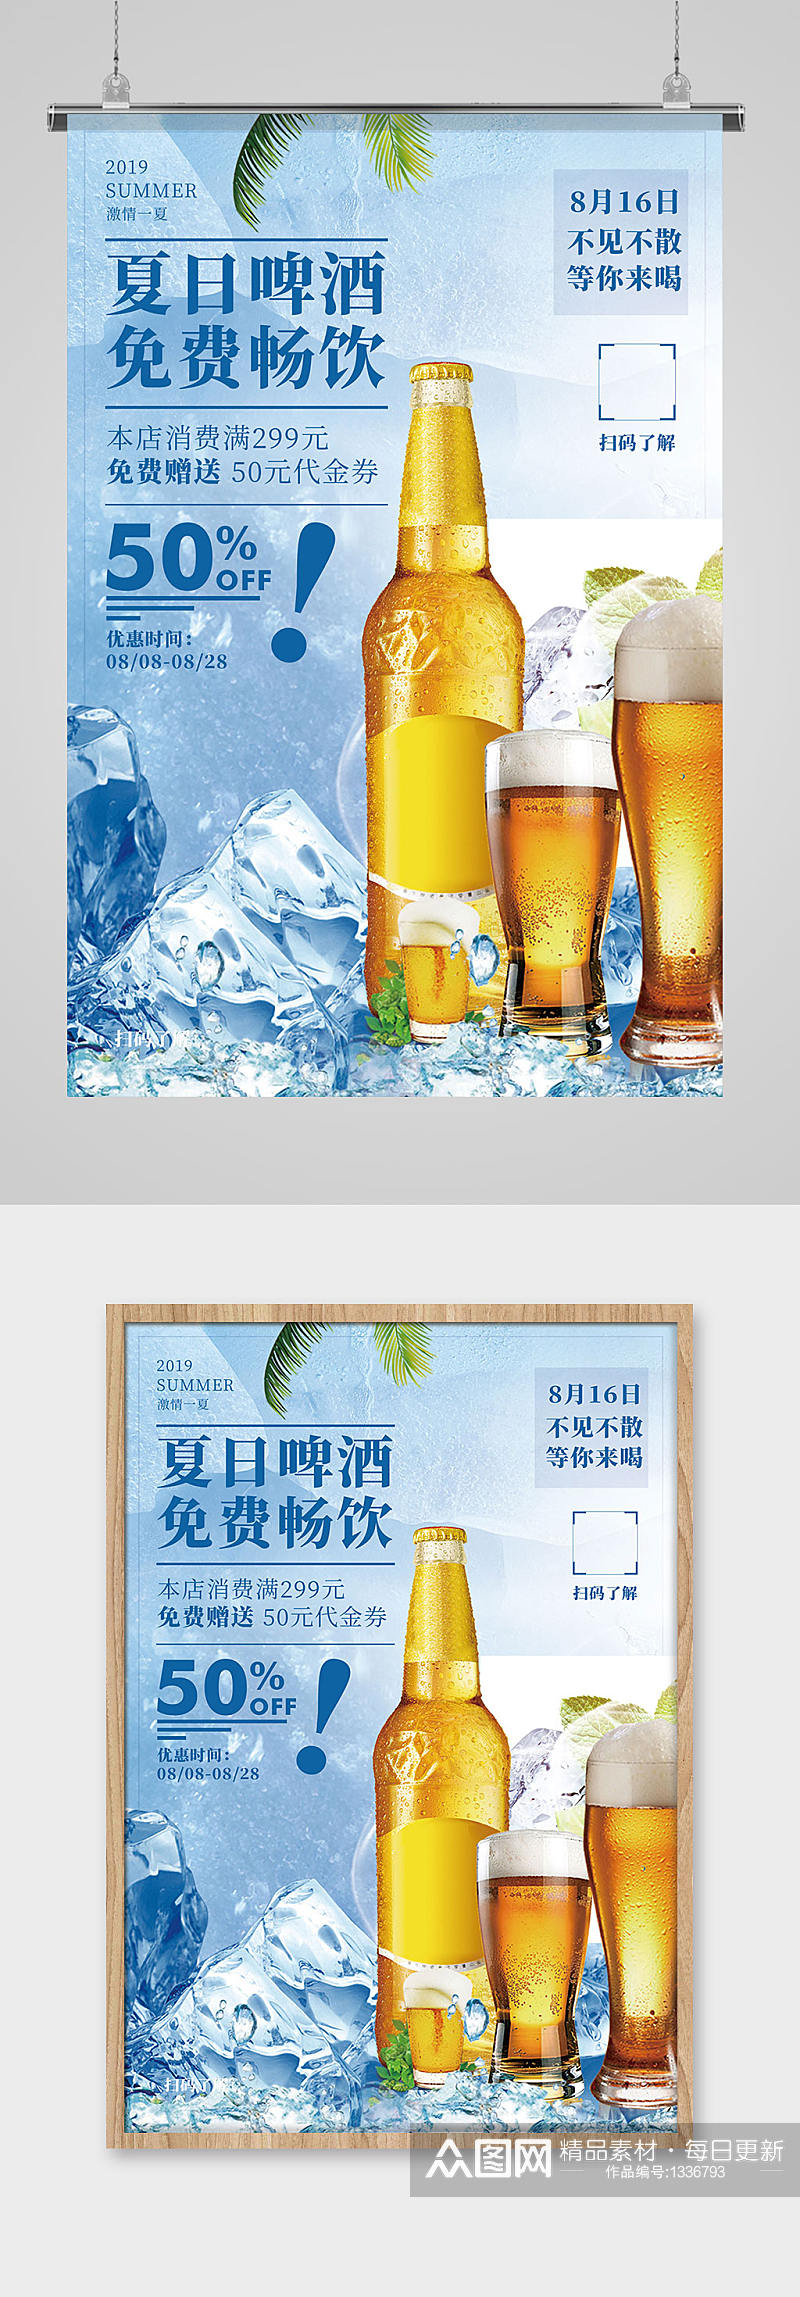 夏季啤酒免费畅饮促销宣传海报素材